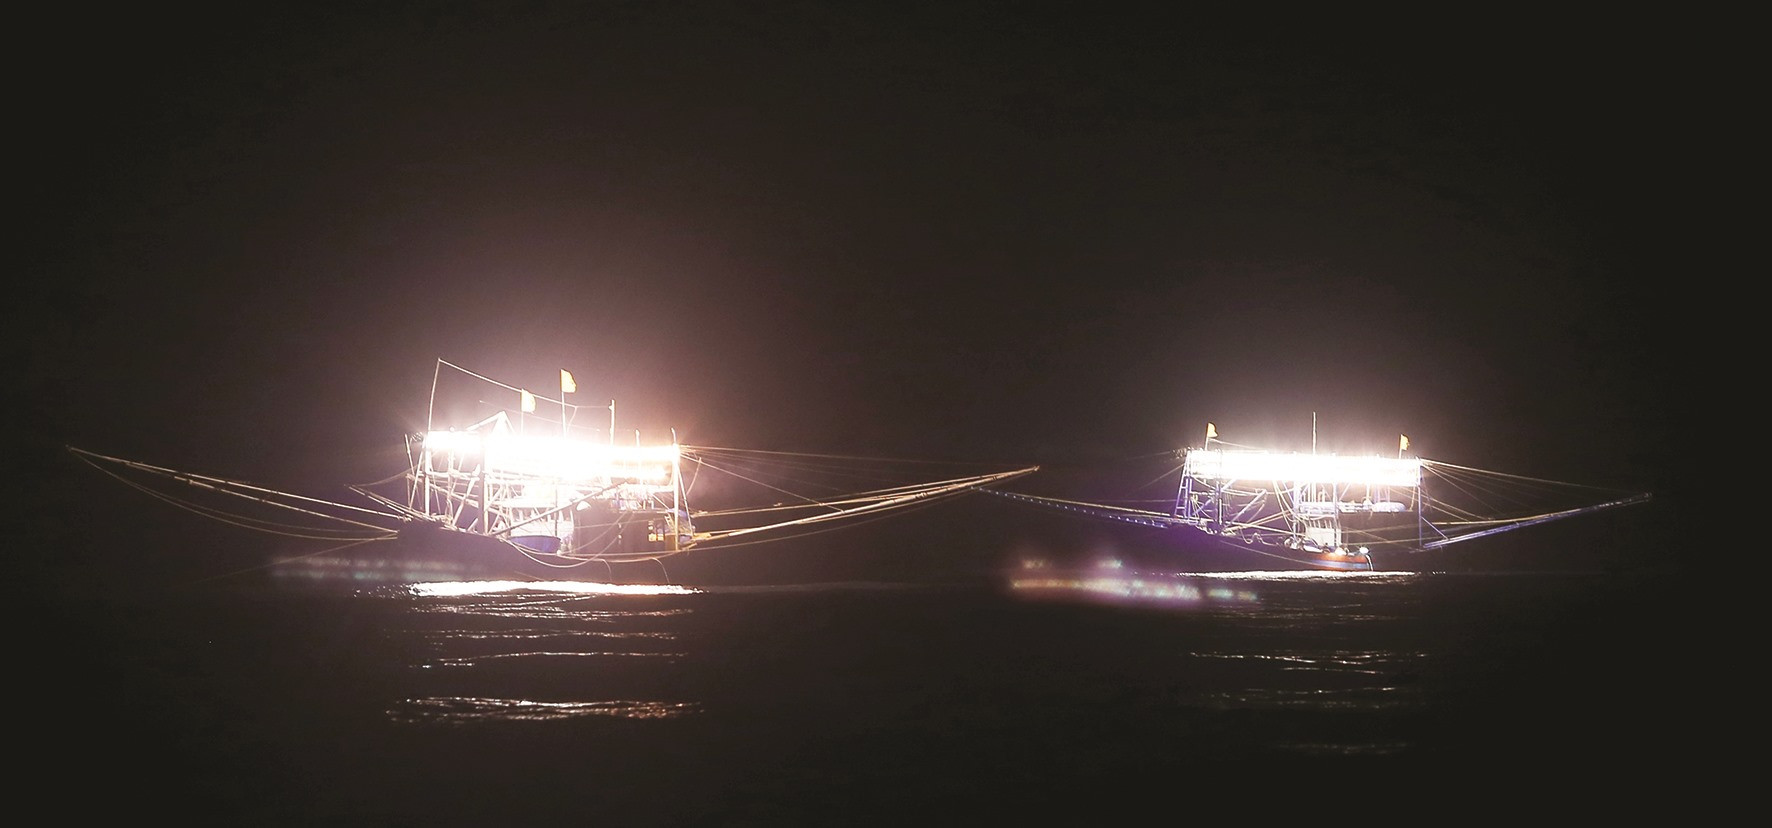 Tàu lưới mành chiếu đèn sáng cả một vùng biển dụ cá, mực đến khai thác.